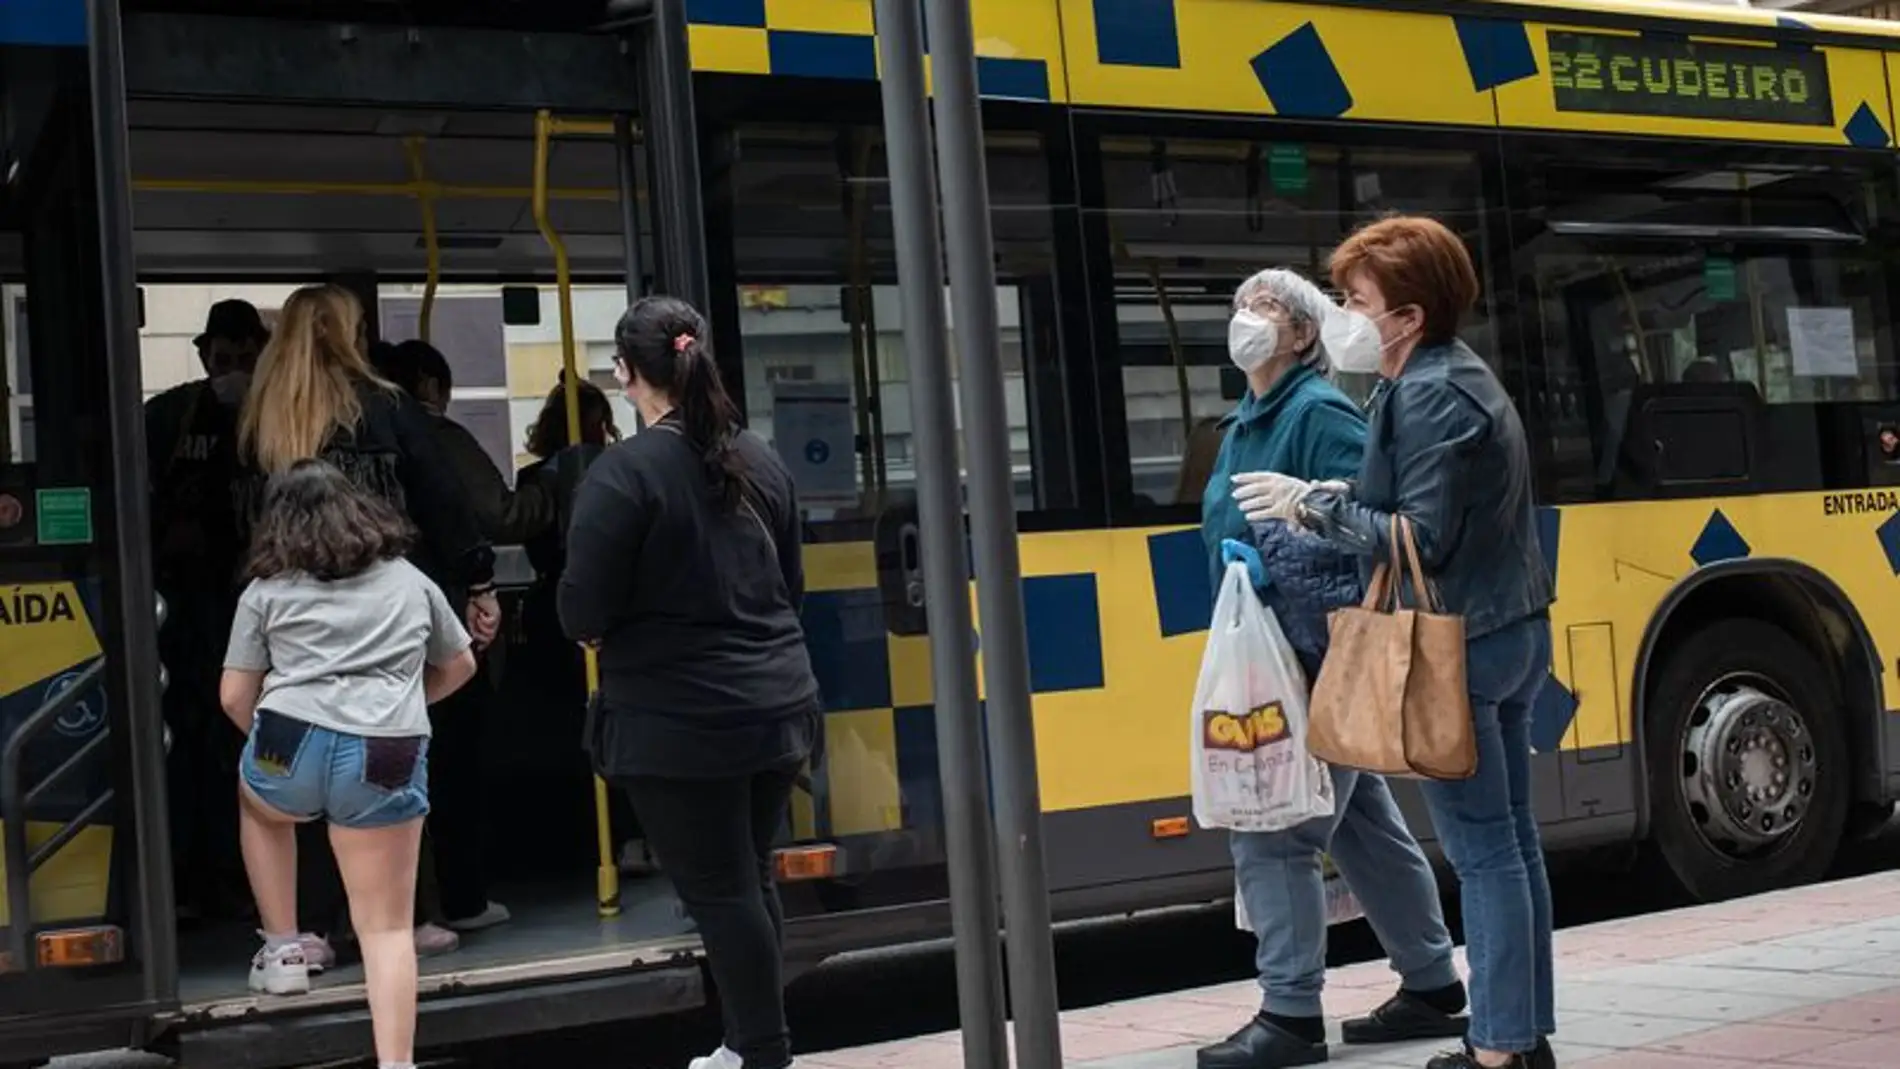 O Psoe urxe ao concello que "limete o aforo" no servizo de autobuses urbanos